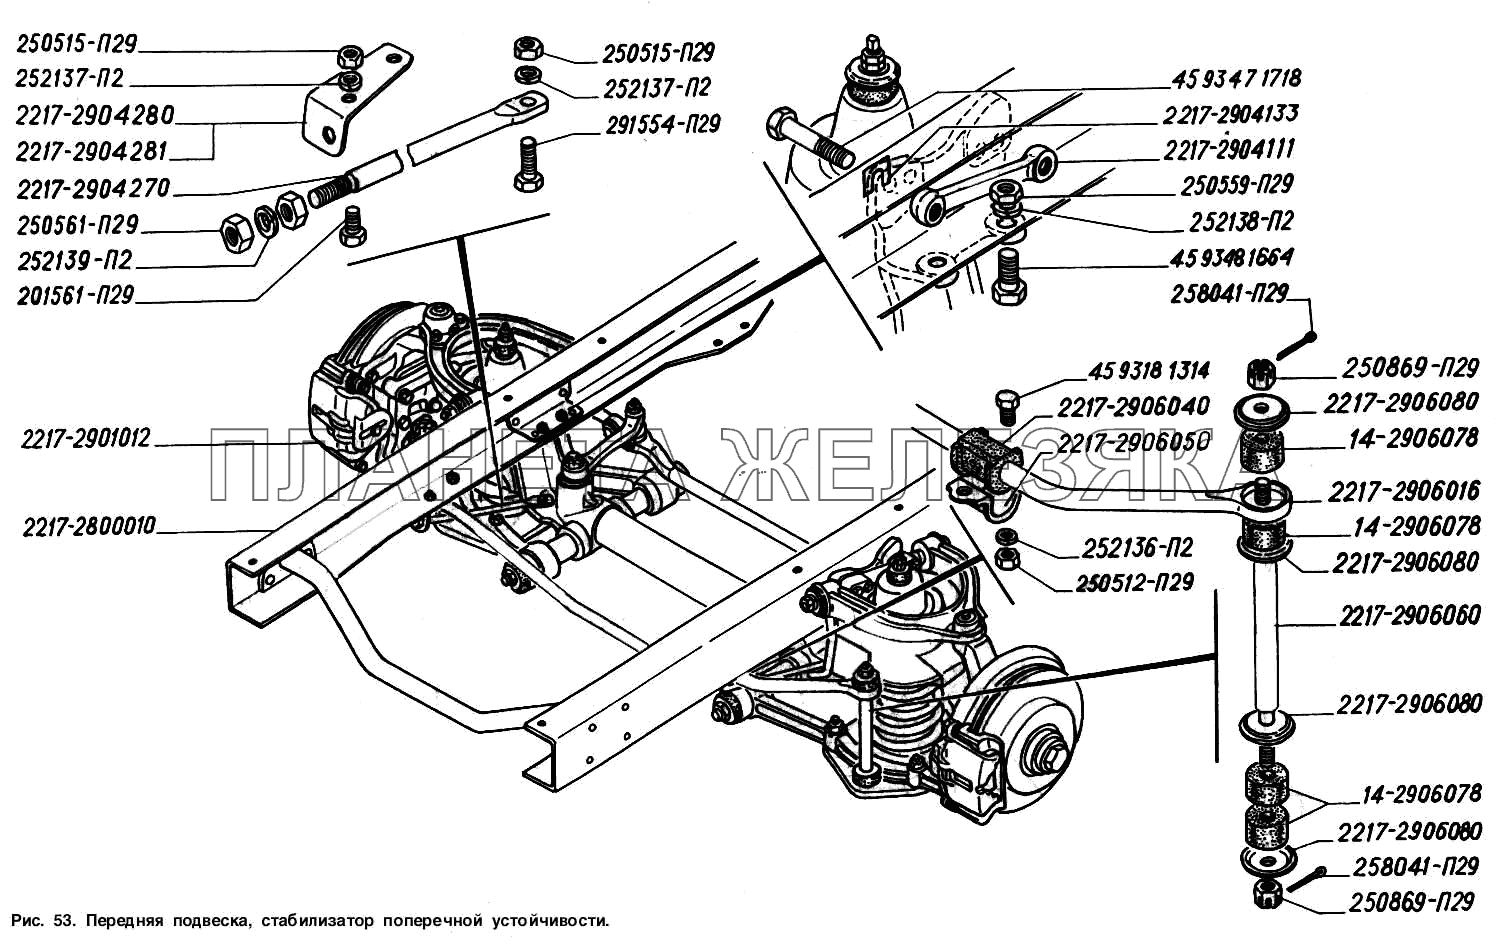 Передняя подвеска, стабилизатор поперечной устойчивости ГАЗ-2217 (Соболь)